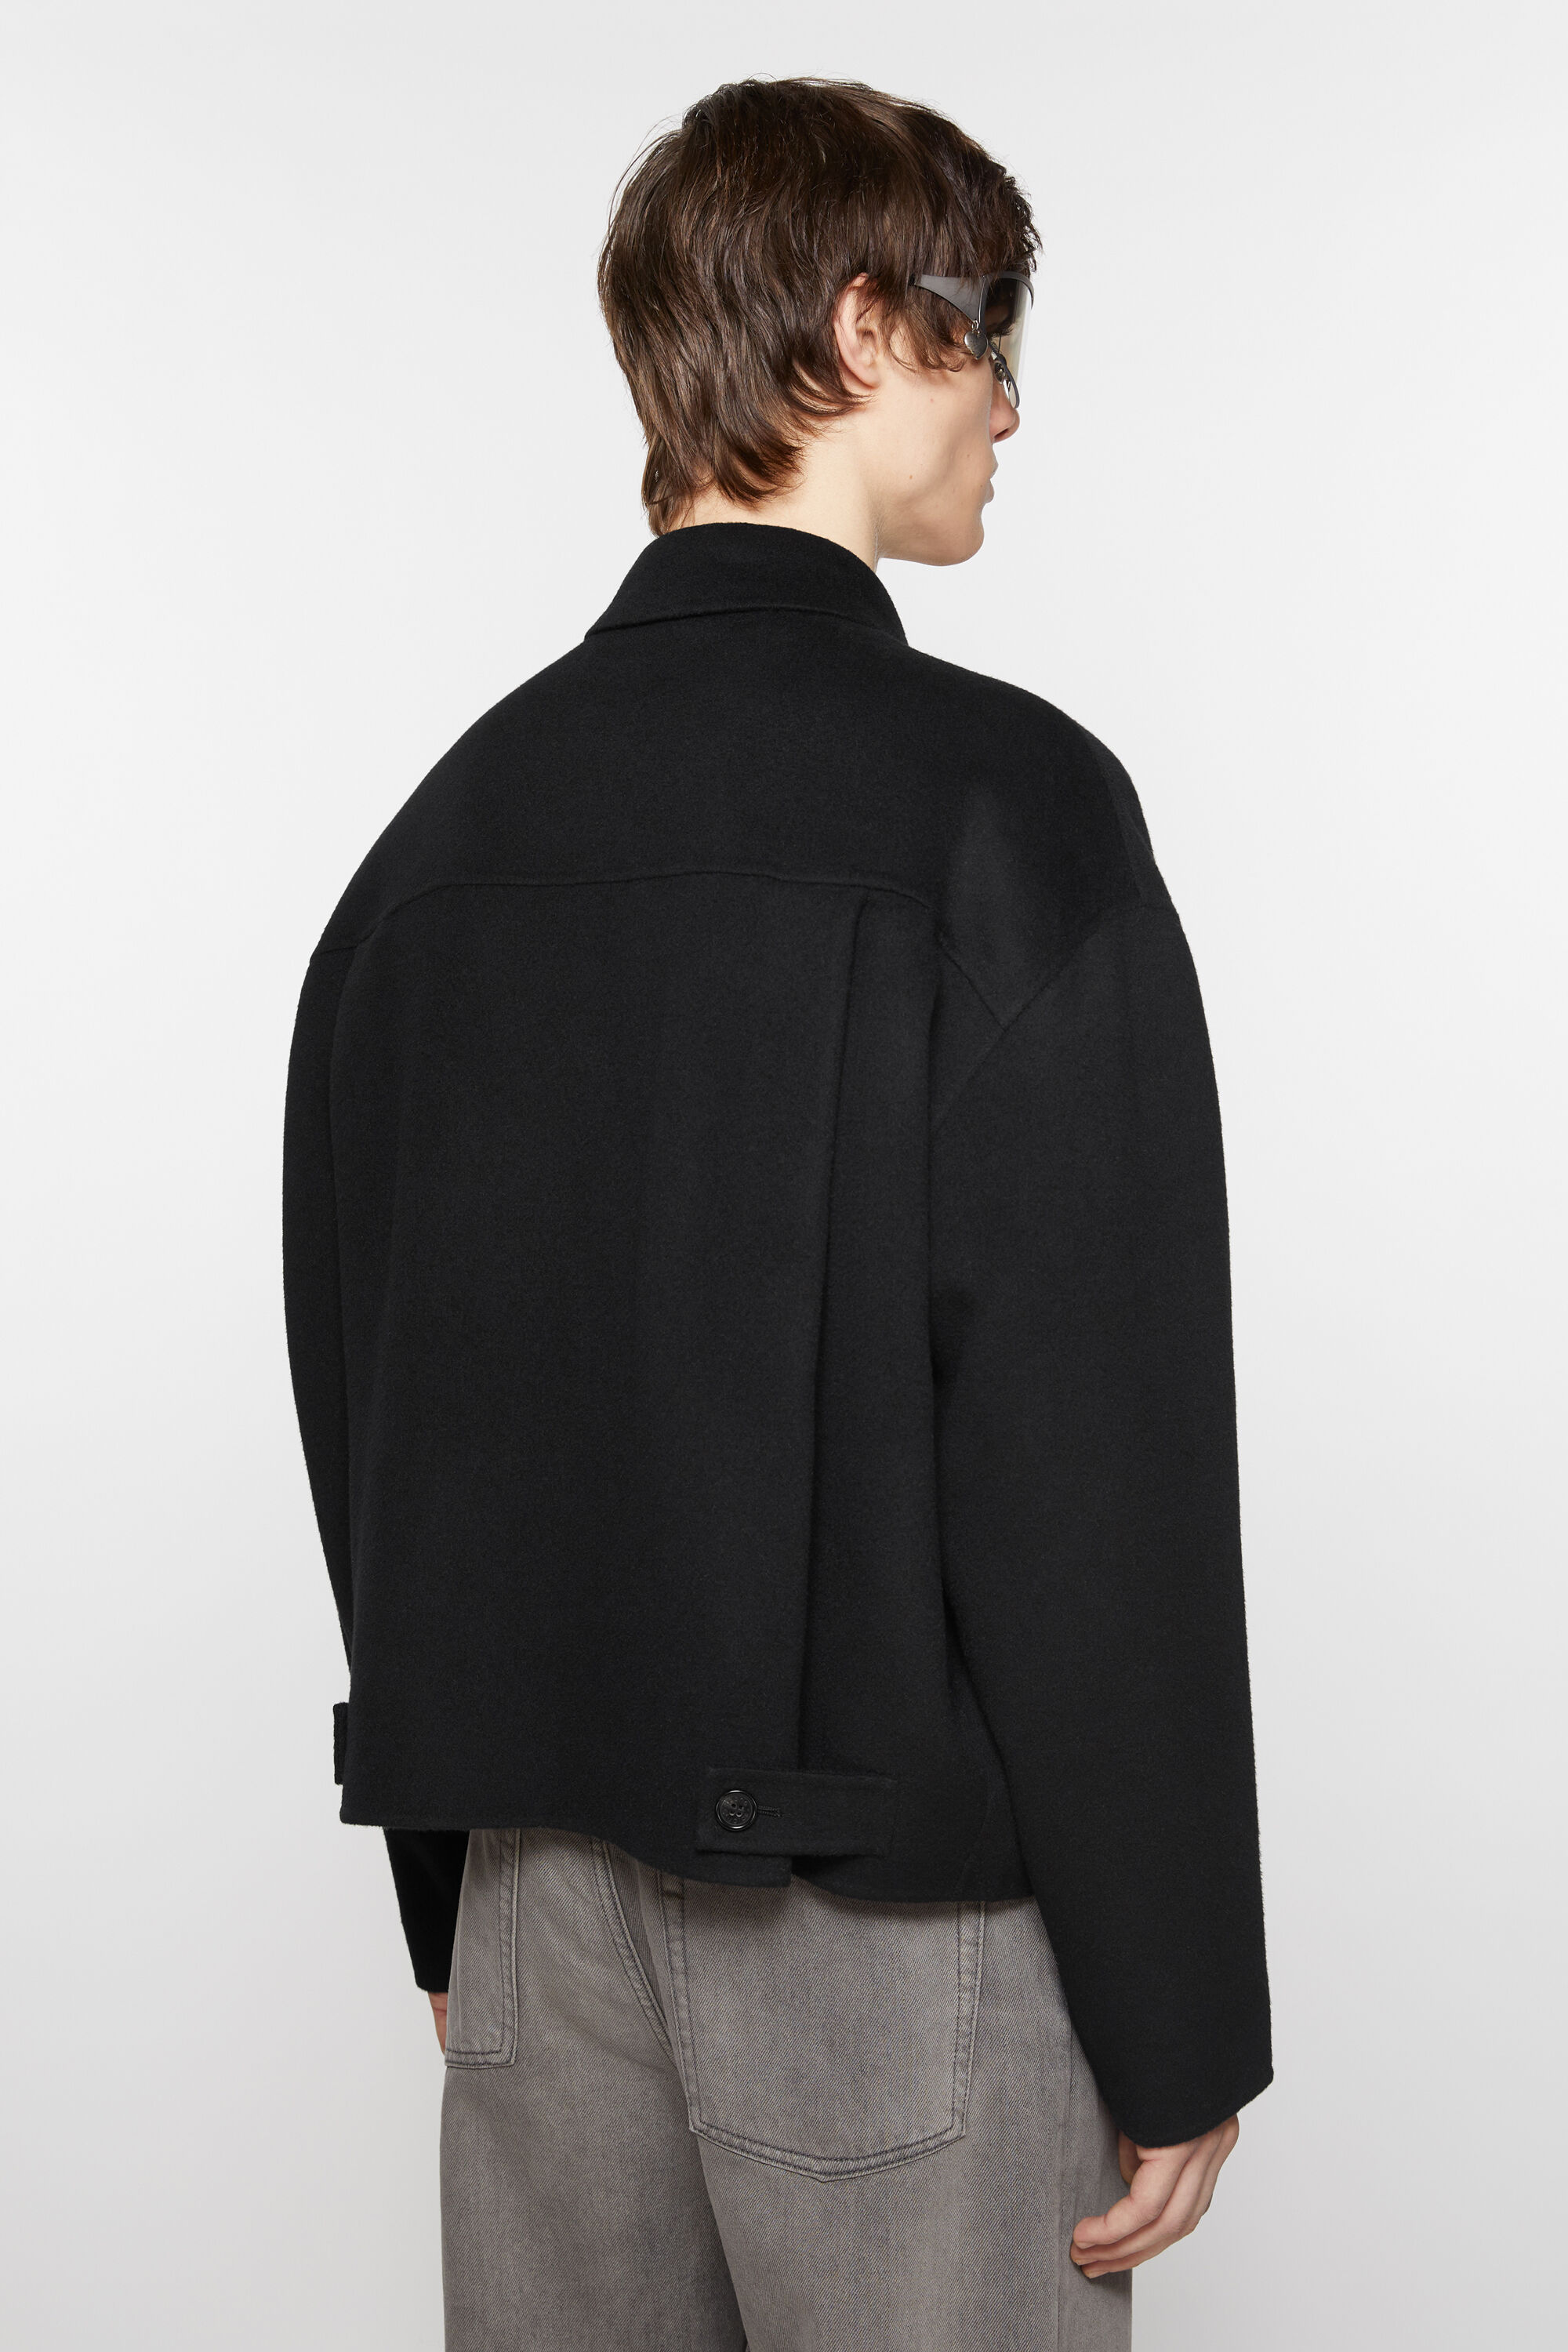 Wool zipper jacket